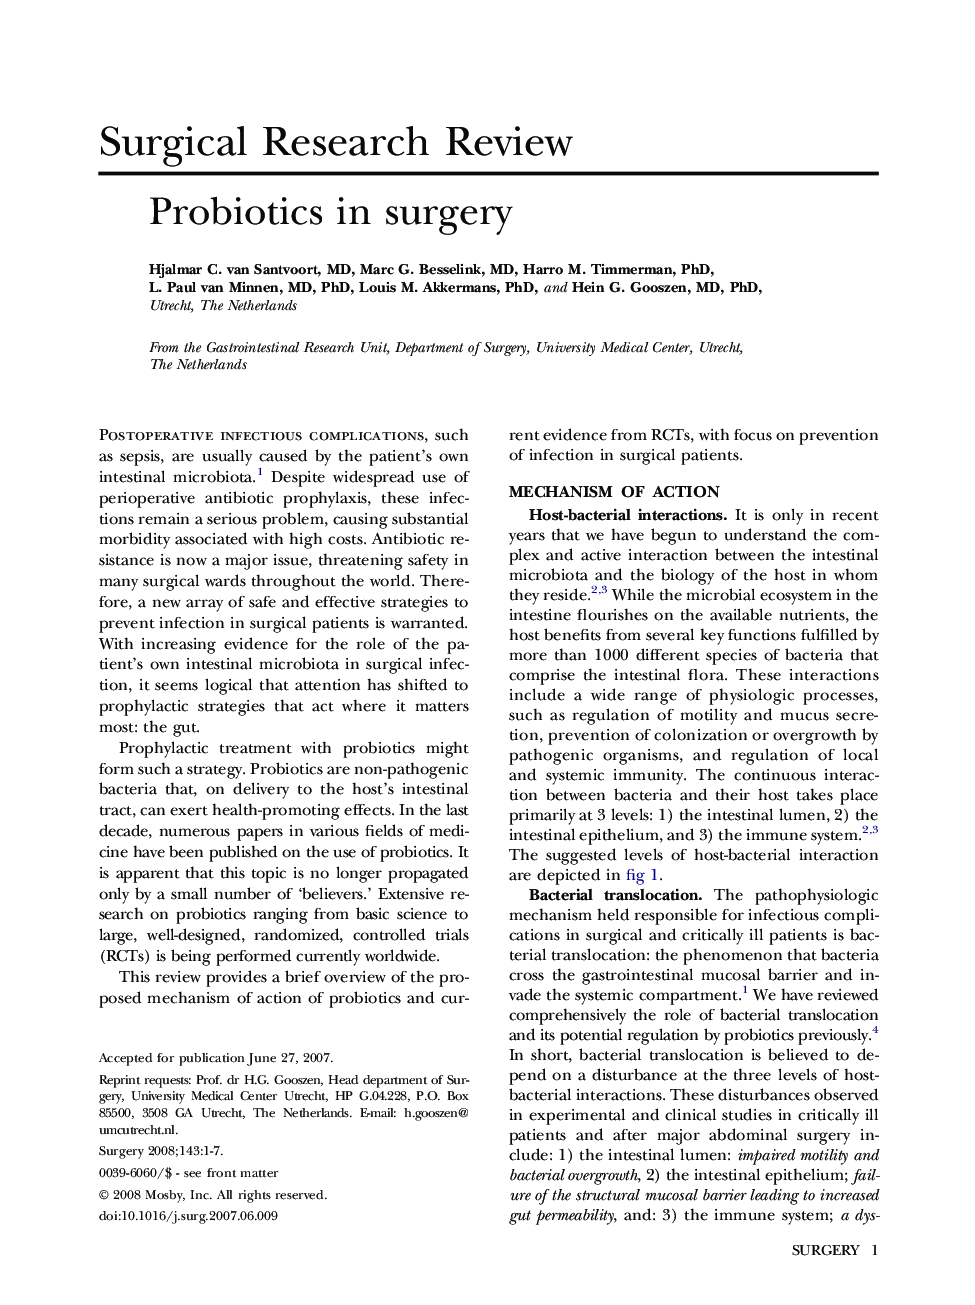 Probiotics in surgery